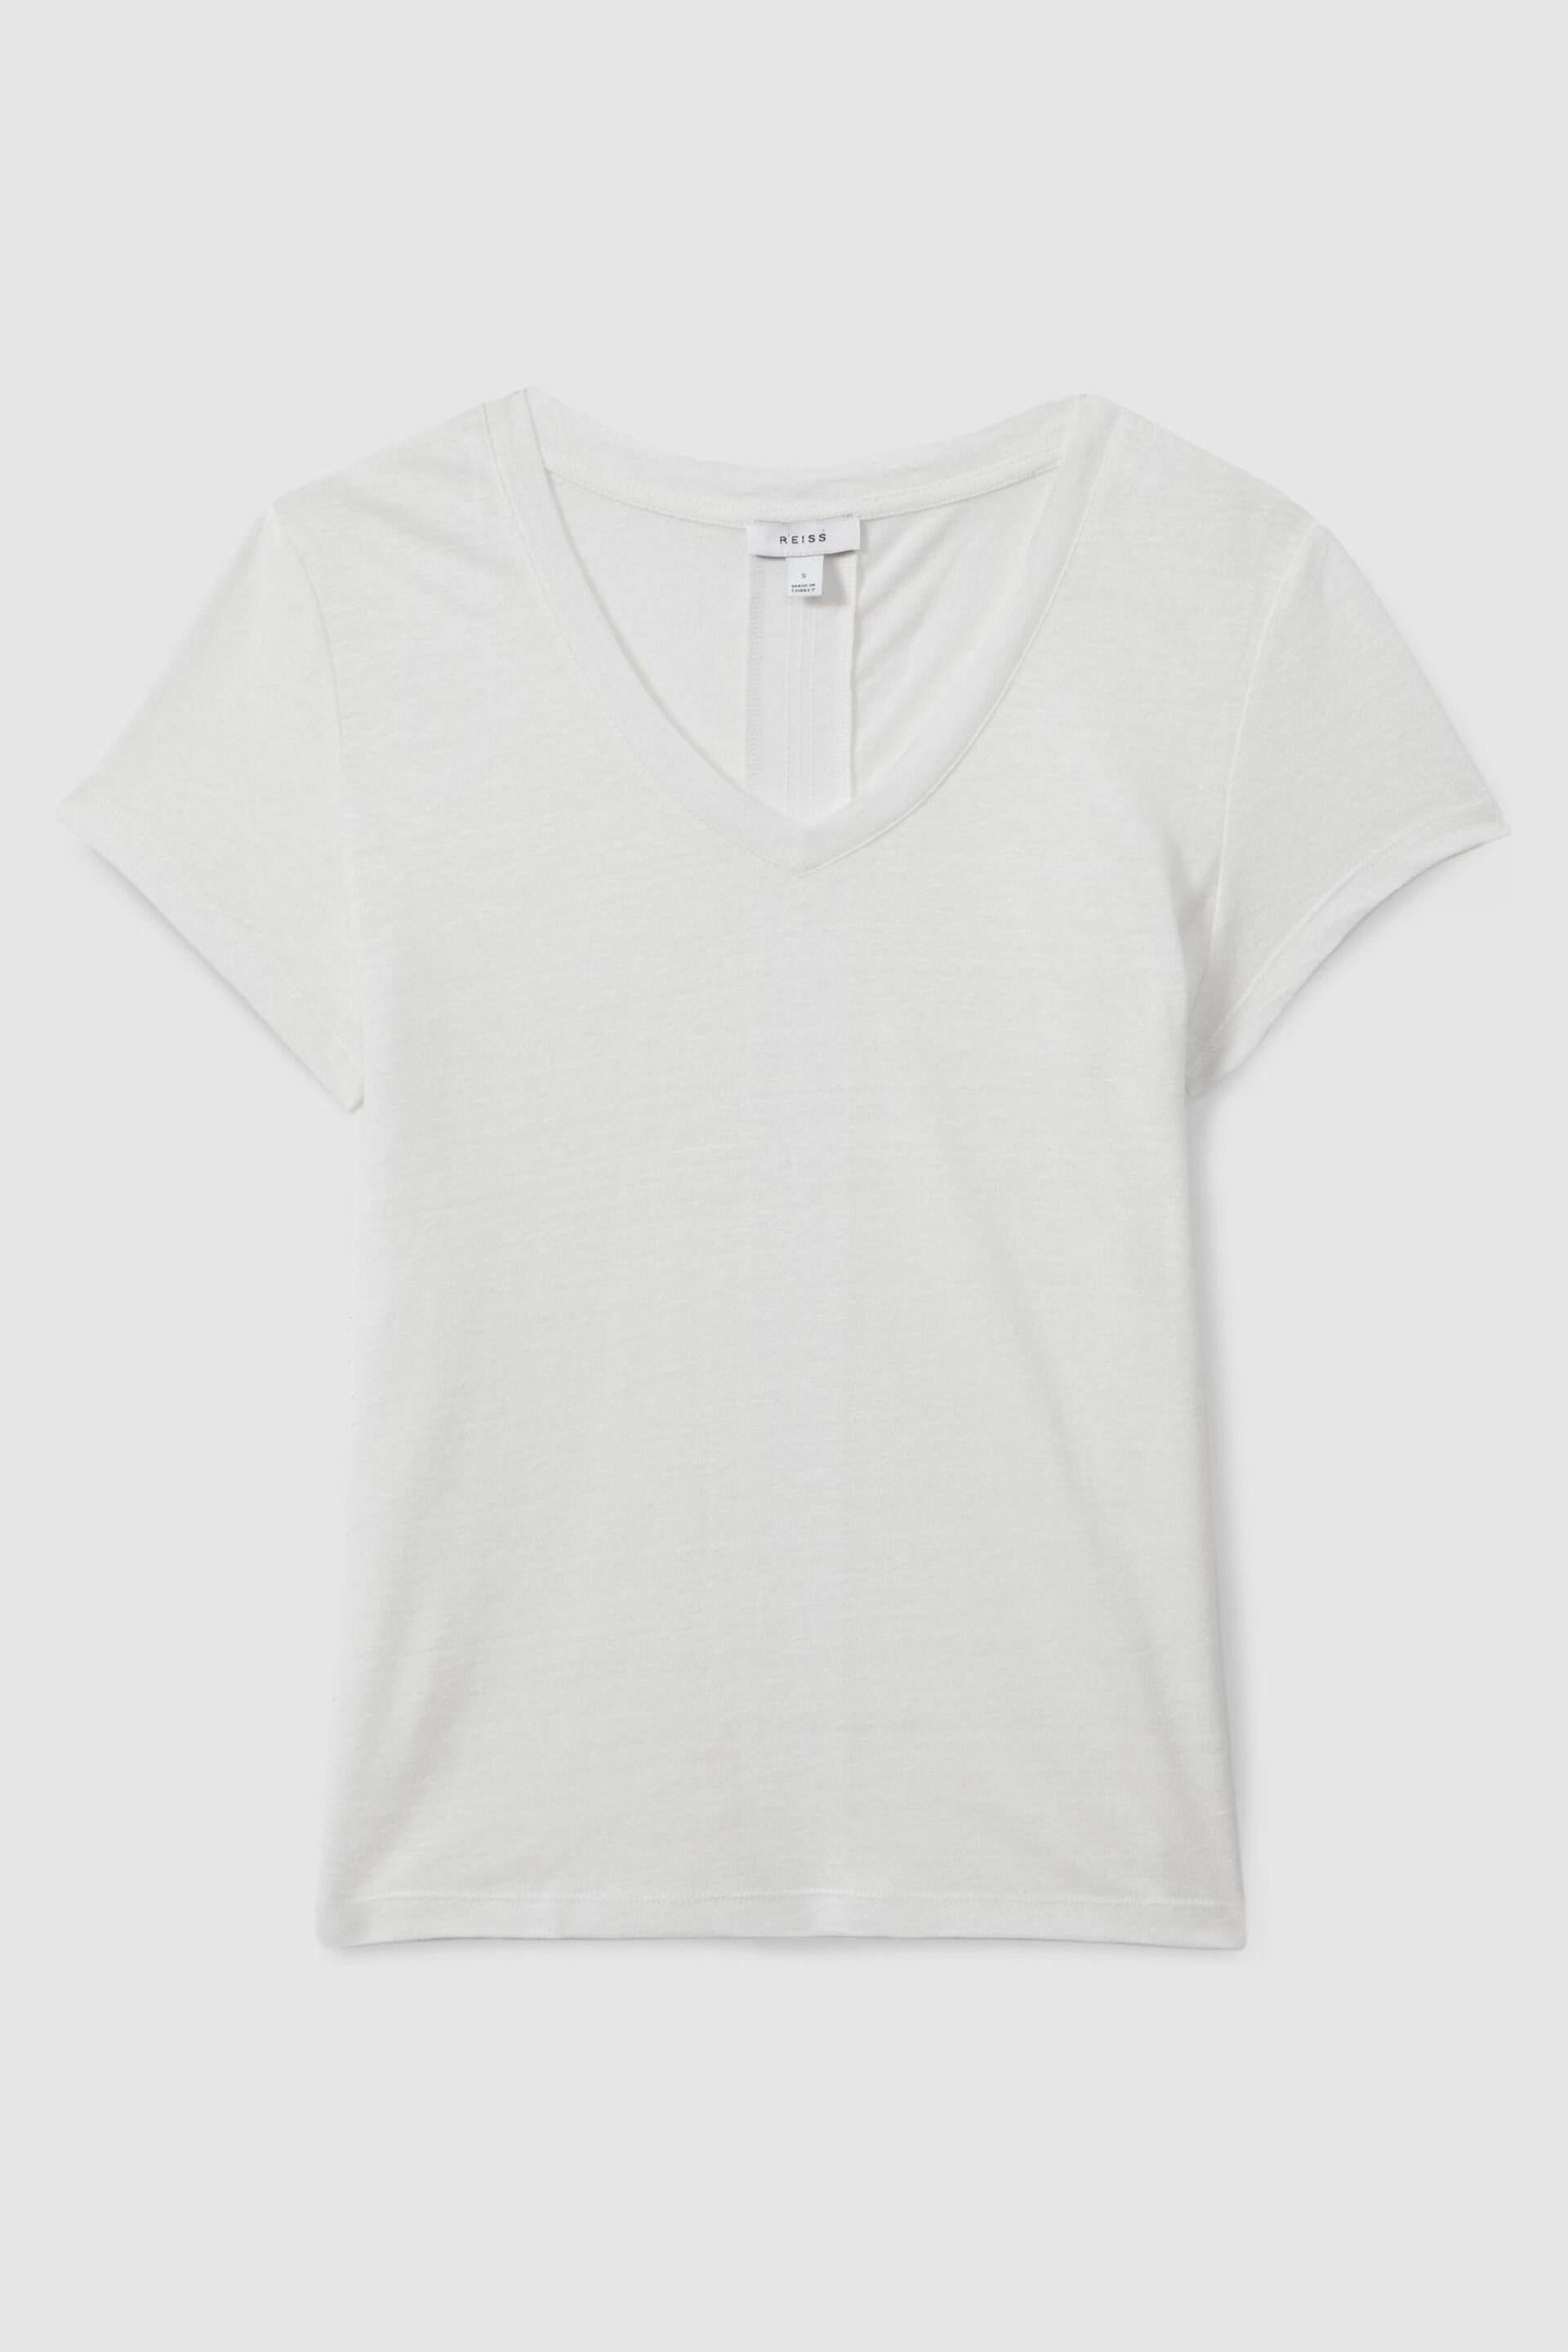 Reiss White Lottie Marled Linen V-Neck T-Shirt - Image 2 of 6